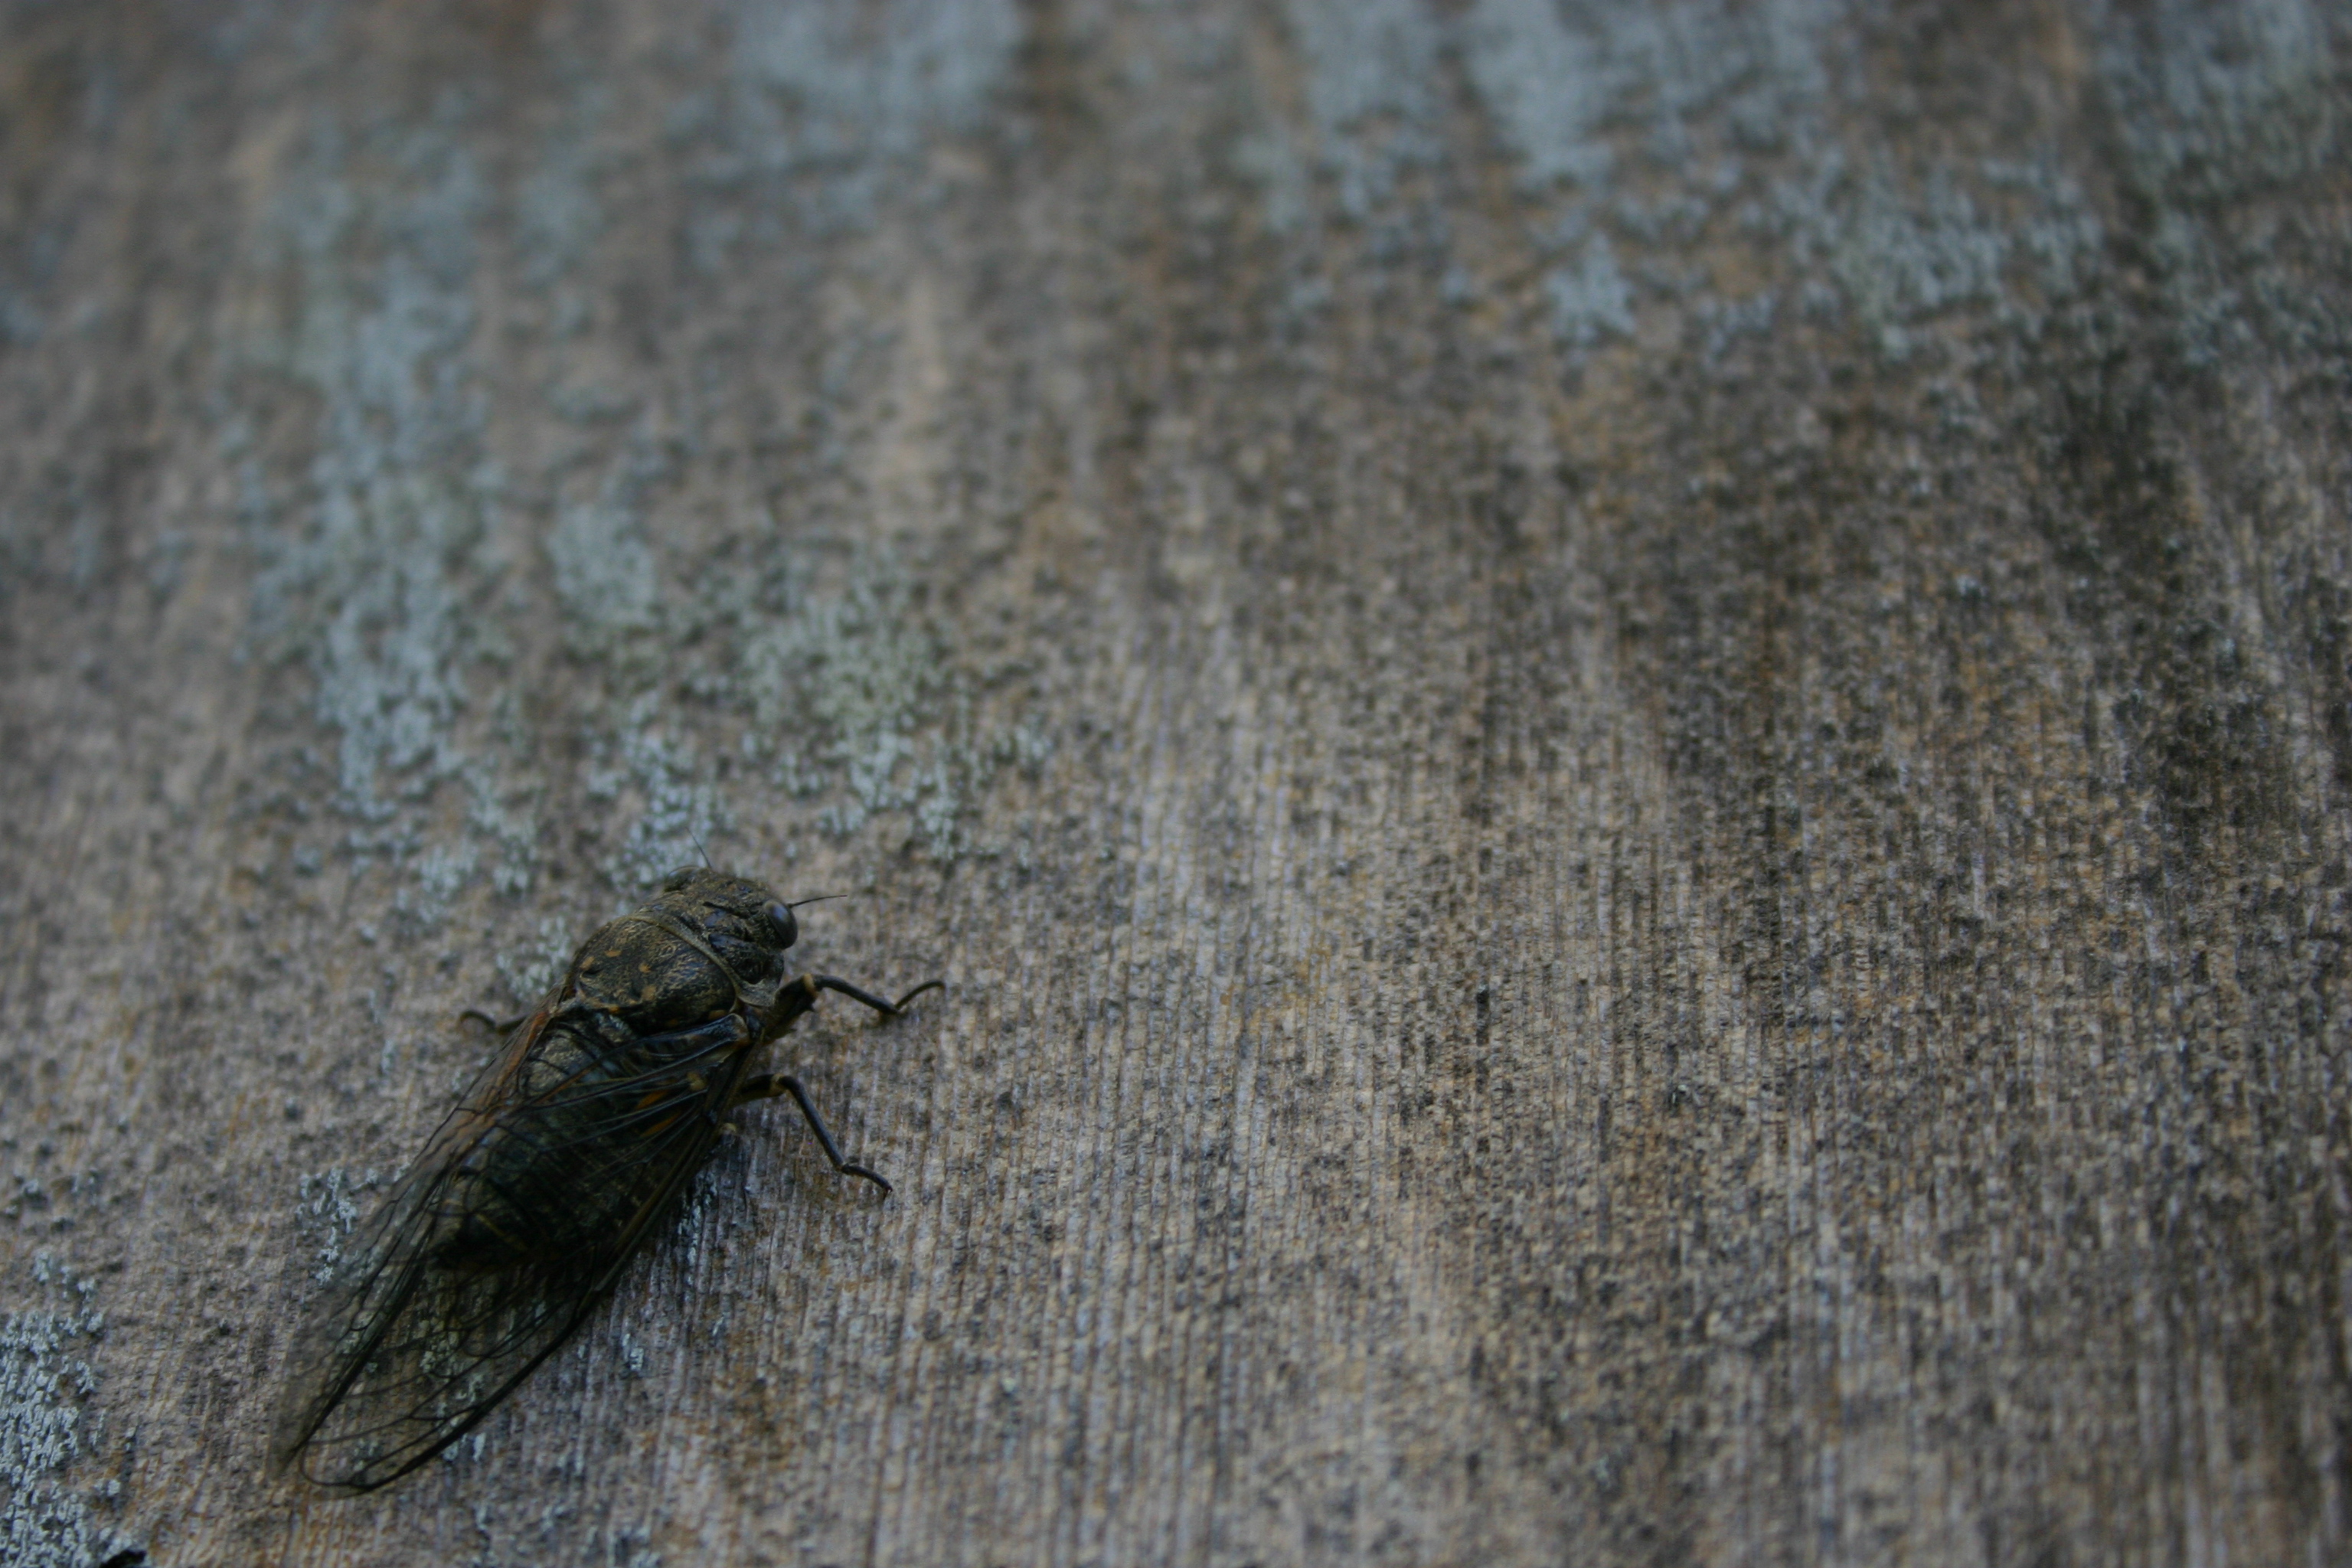 A live cicada on my house.